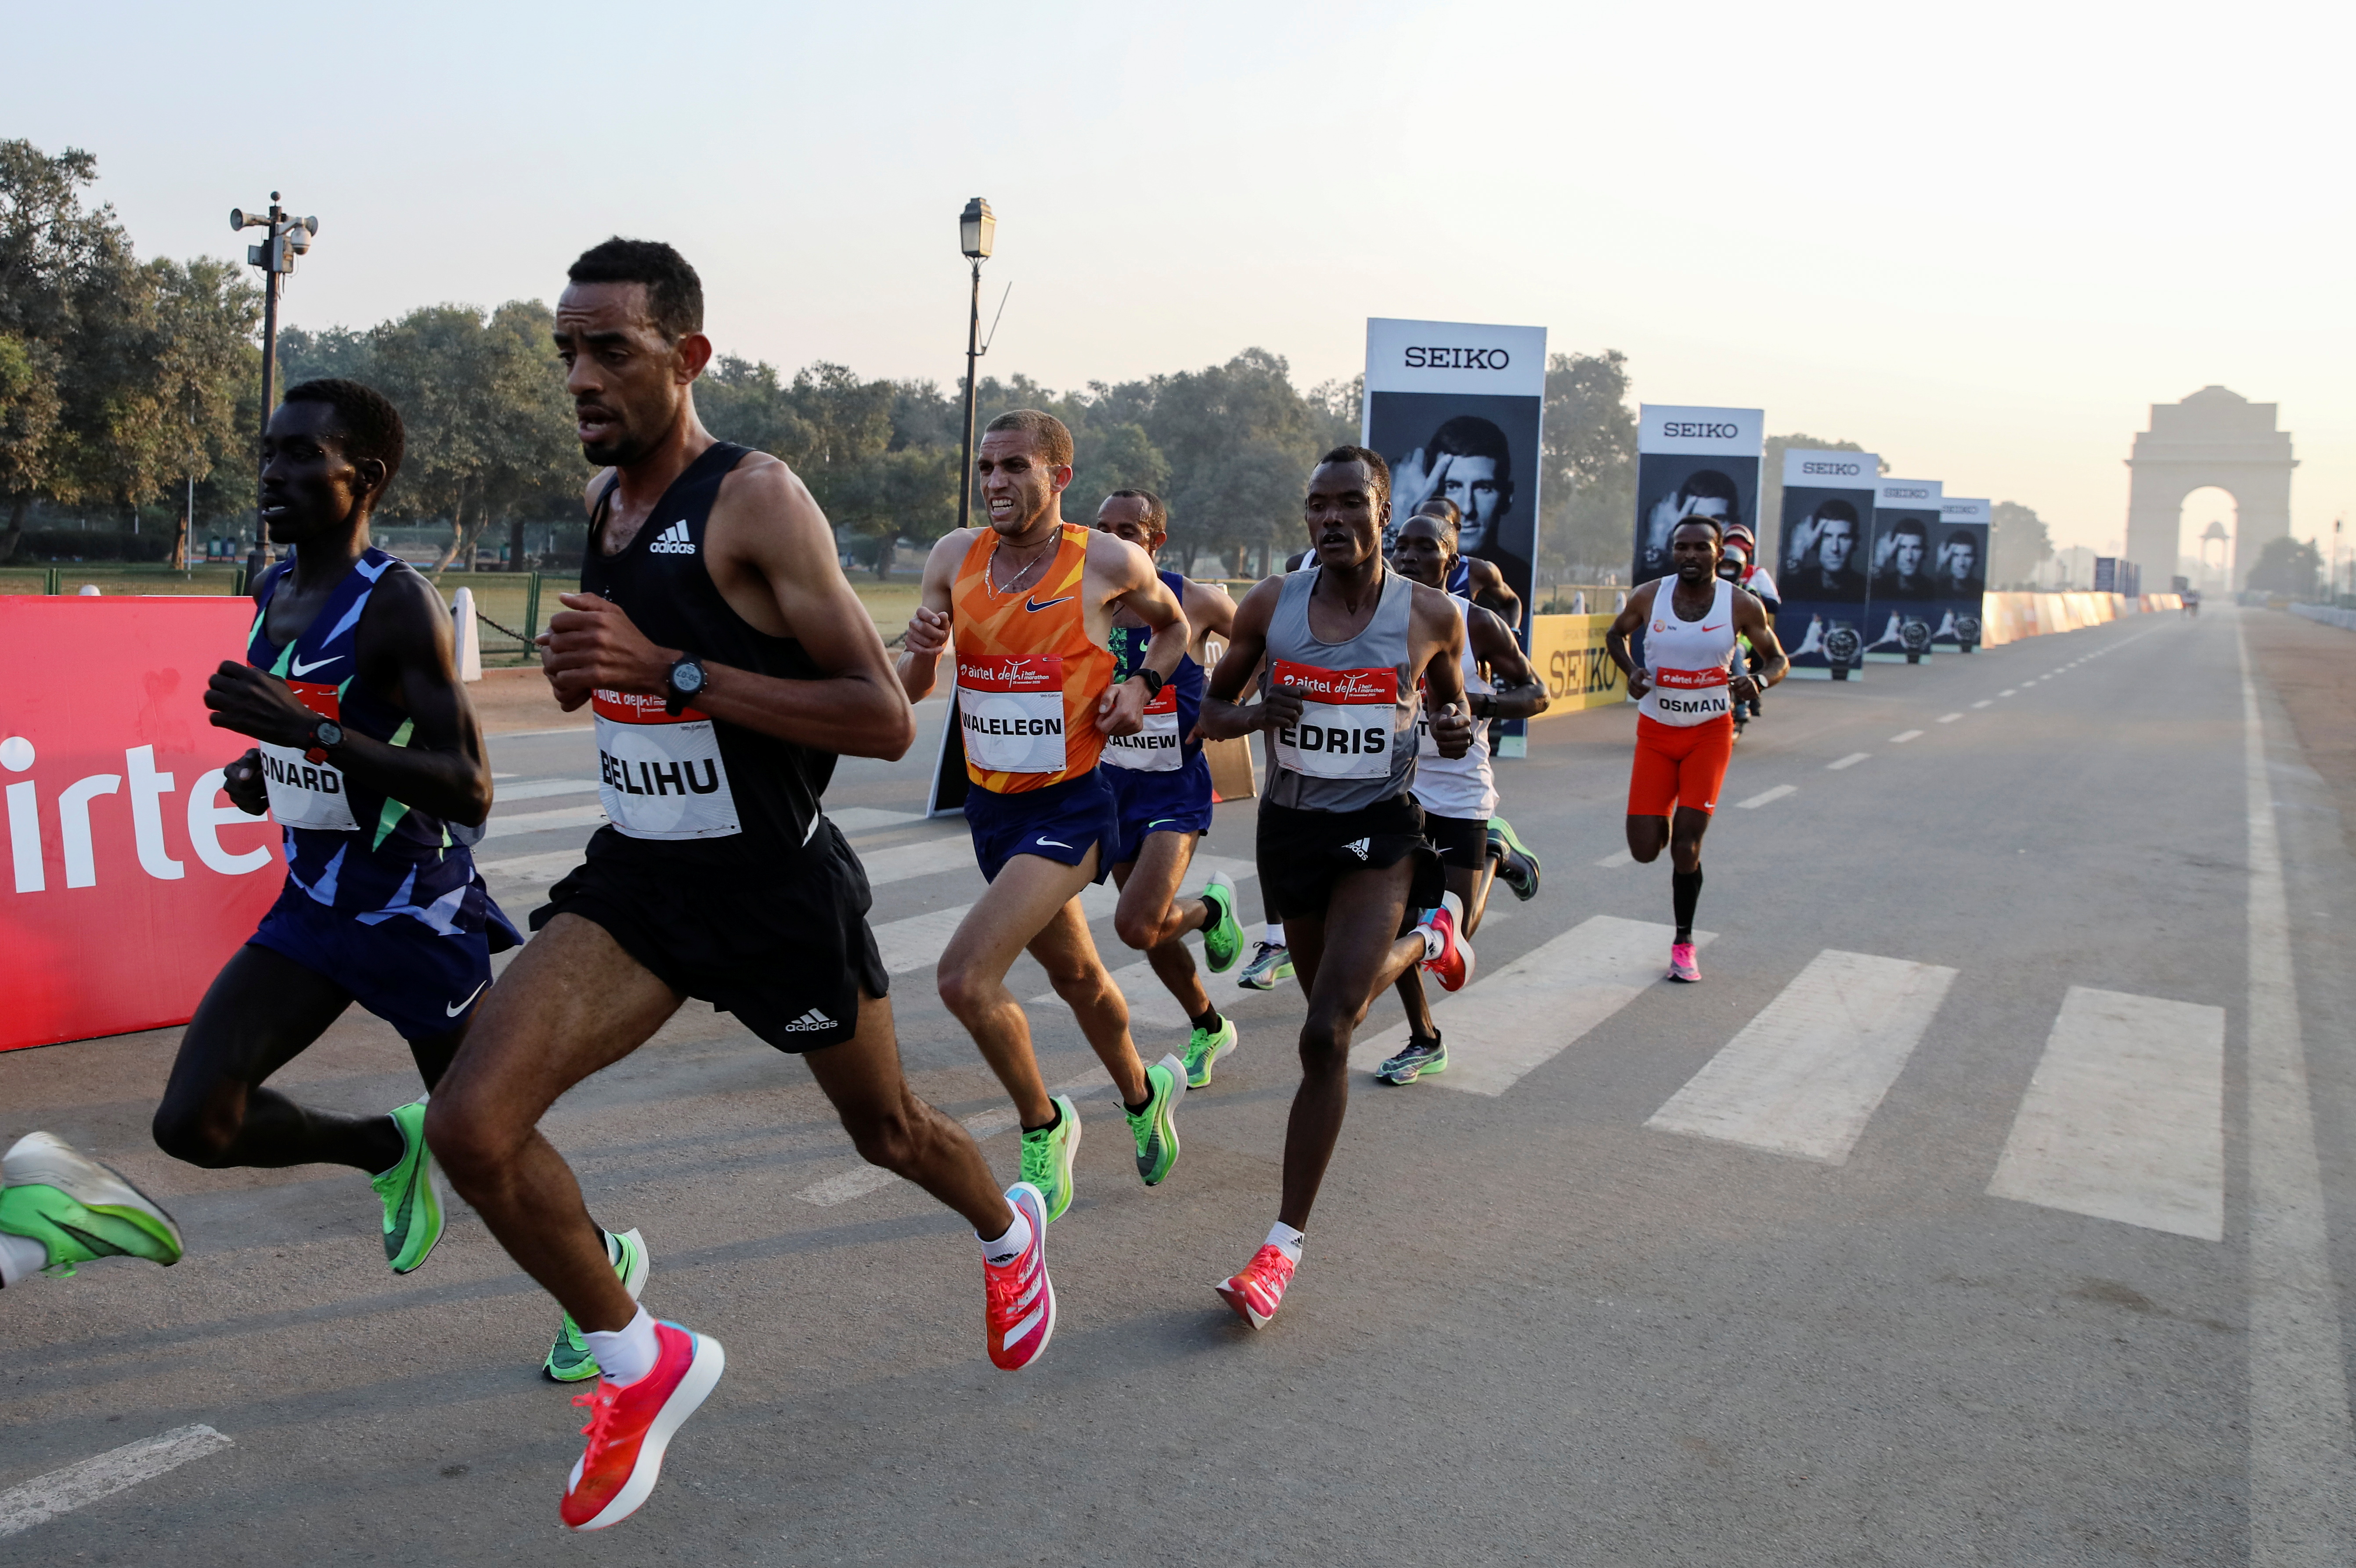 Existen carreras, grupos de corredores, que son ideales para conocer personas que les guste el running (Reuters)